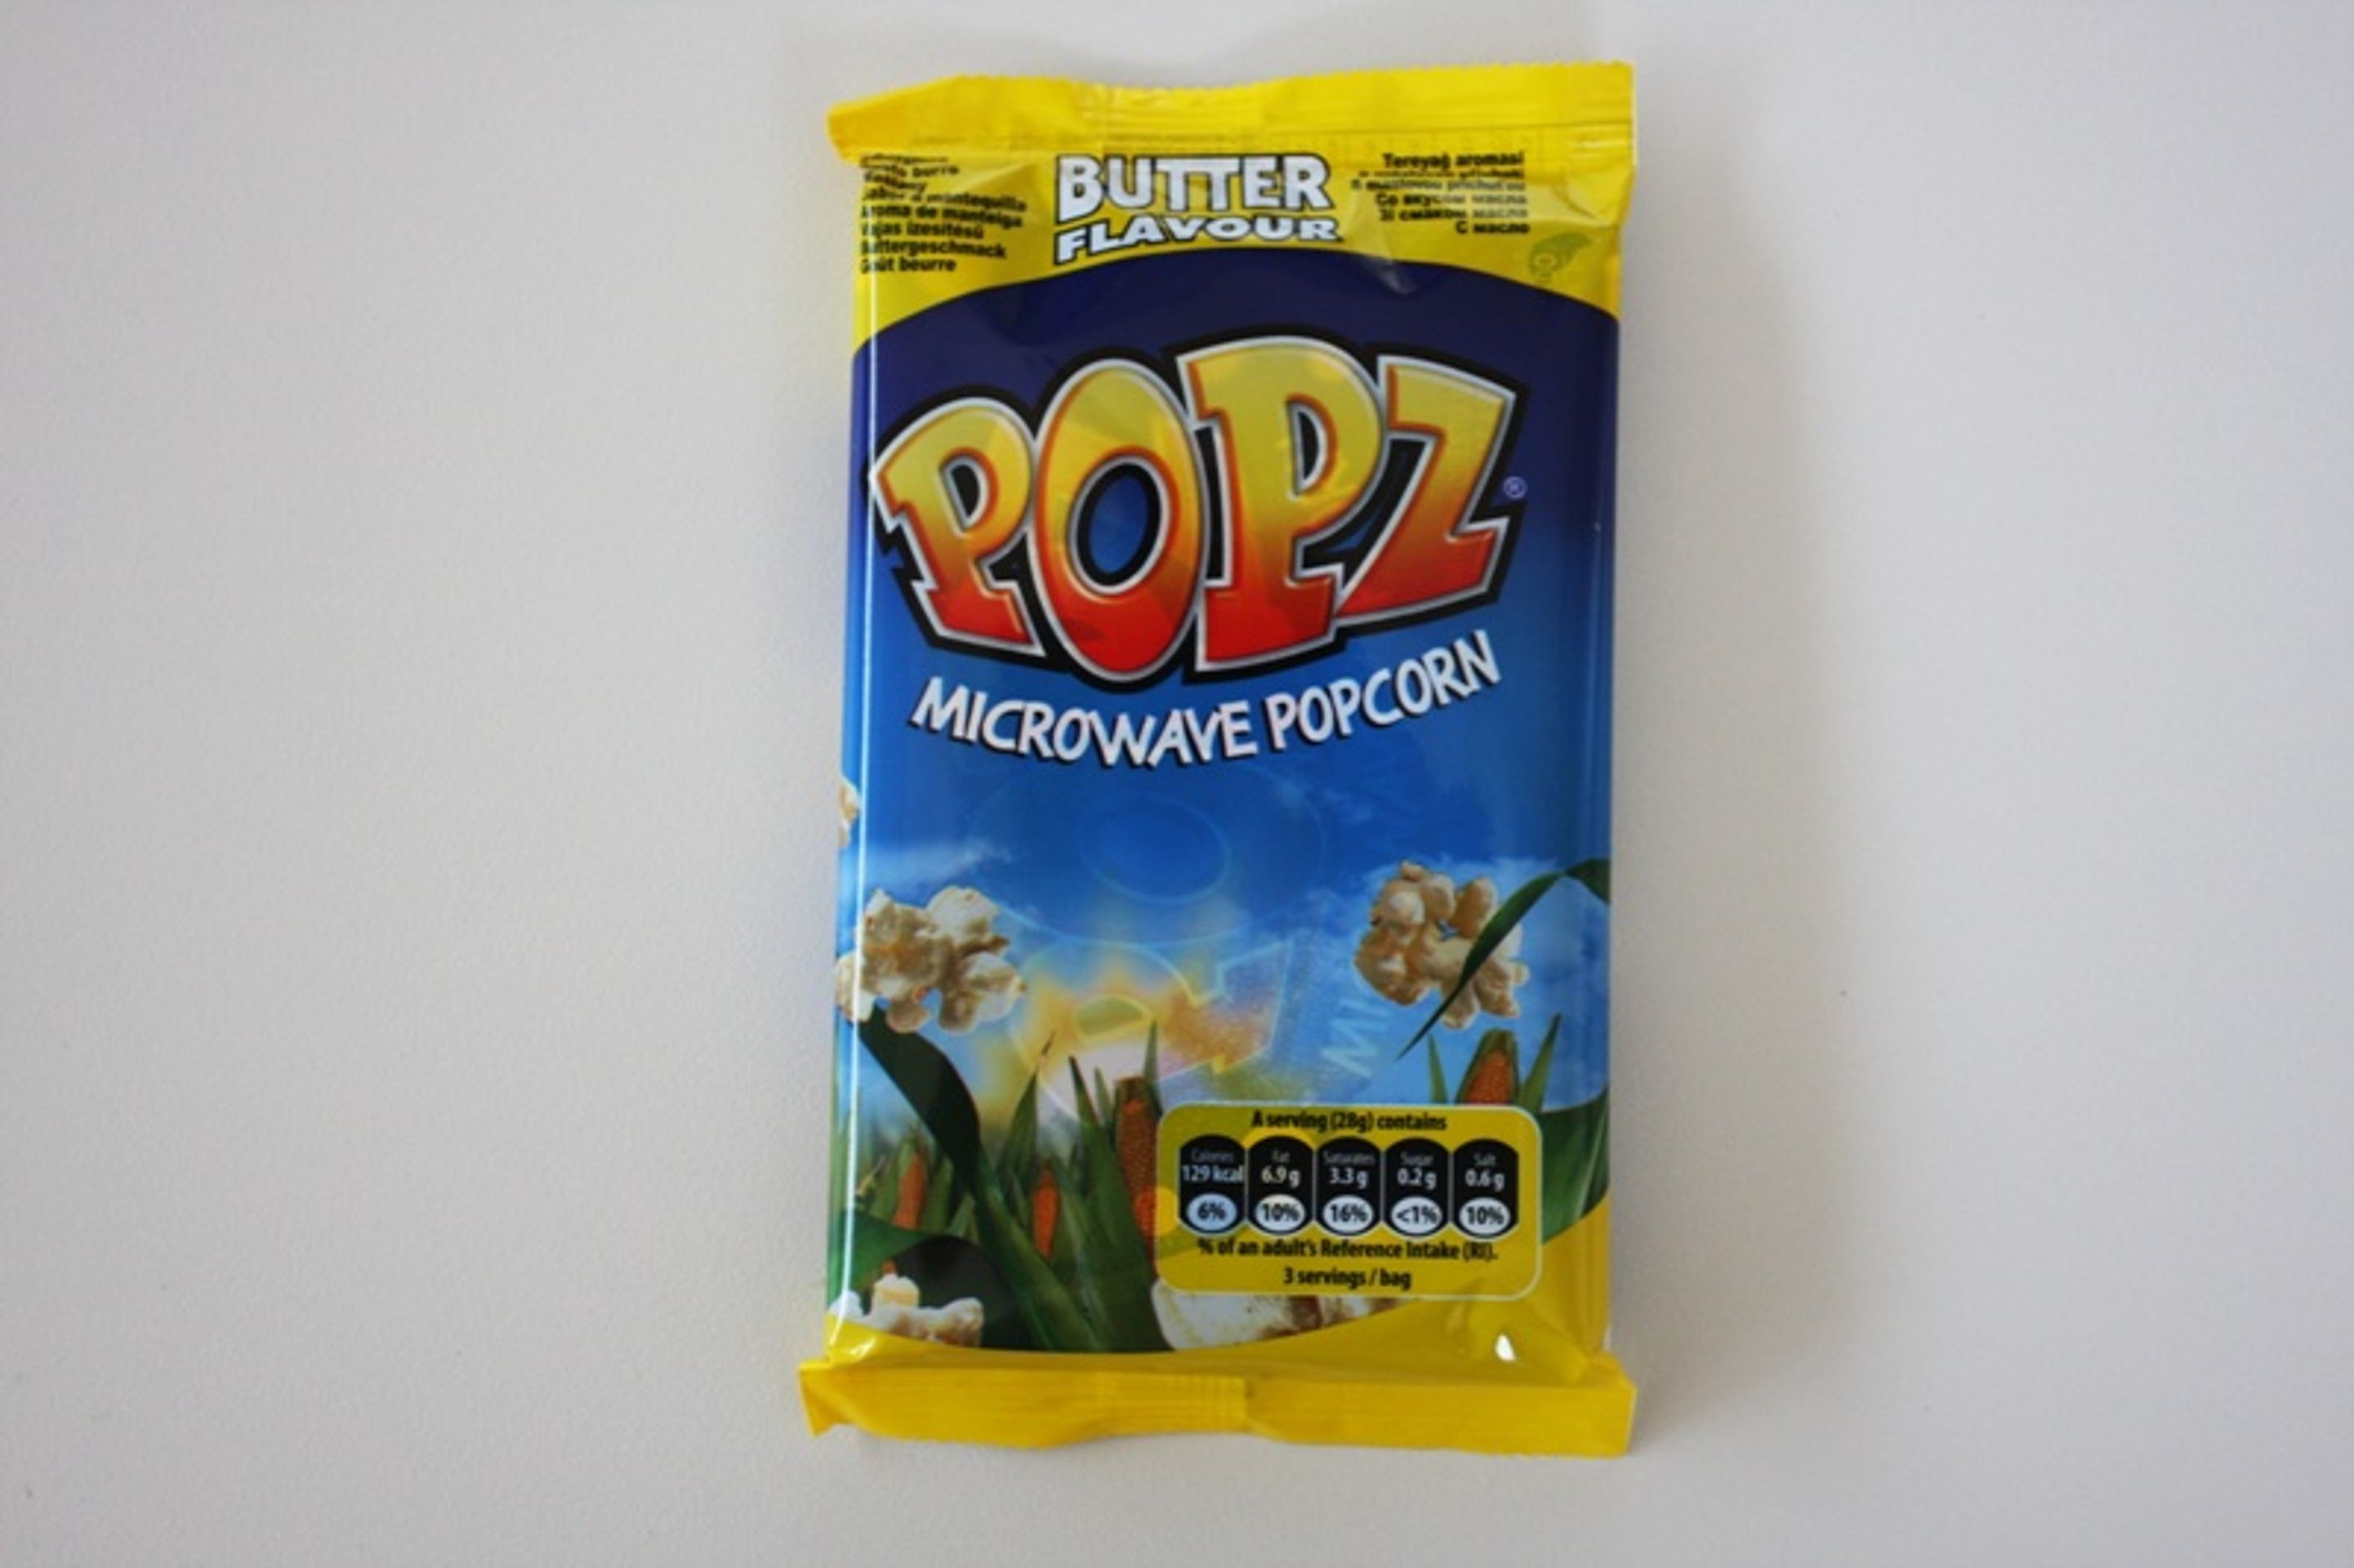 11. místo: Popz: Microwave popcorn - butter flavour (Kukuřice k pražení v mikrovlnné troubě) - GALERIE: Test popcornů s máslovou příchutí (11/16)